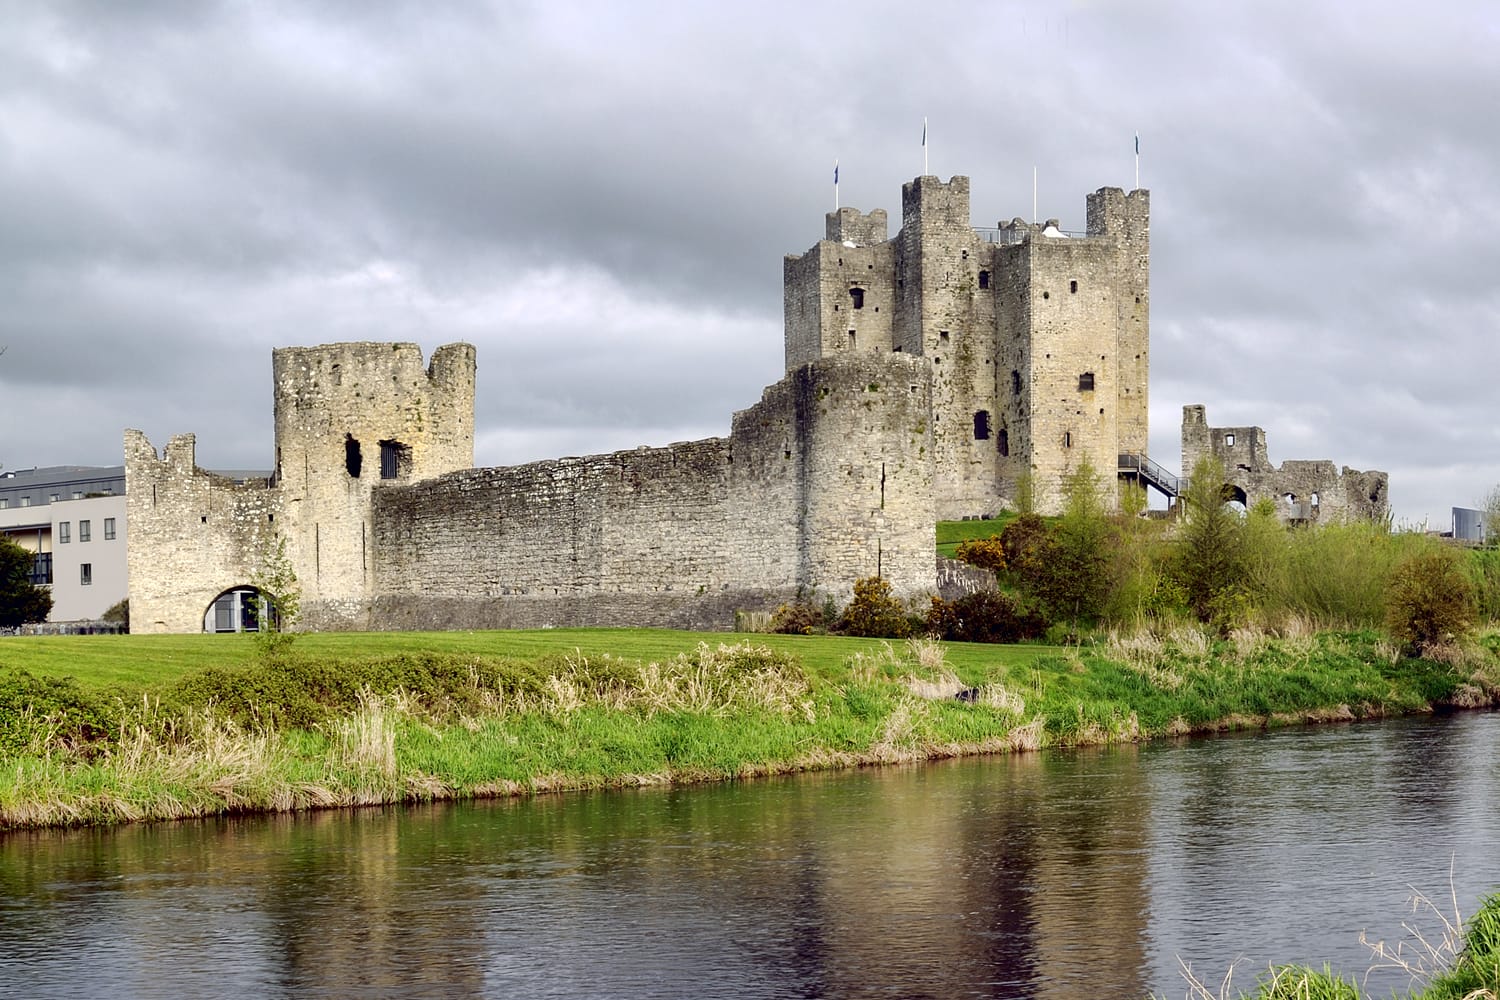 Trim Castle in Ireland